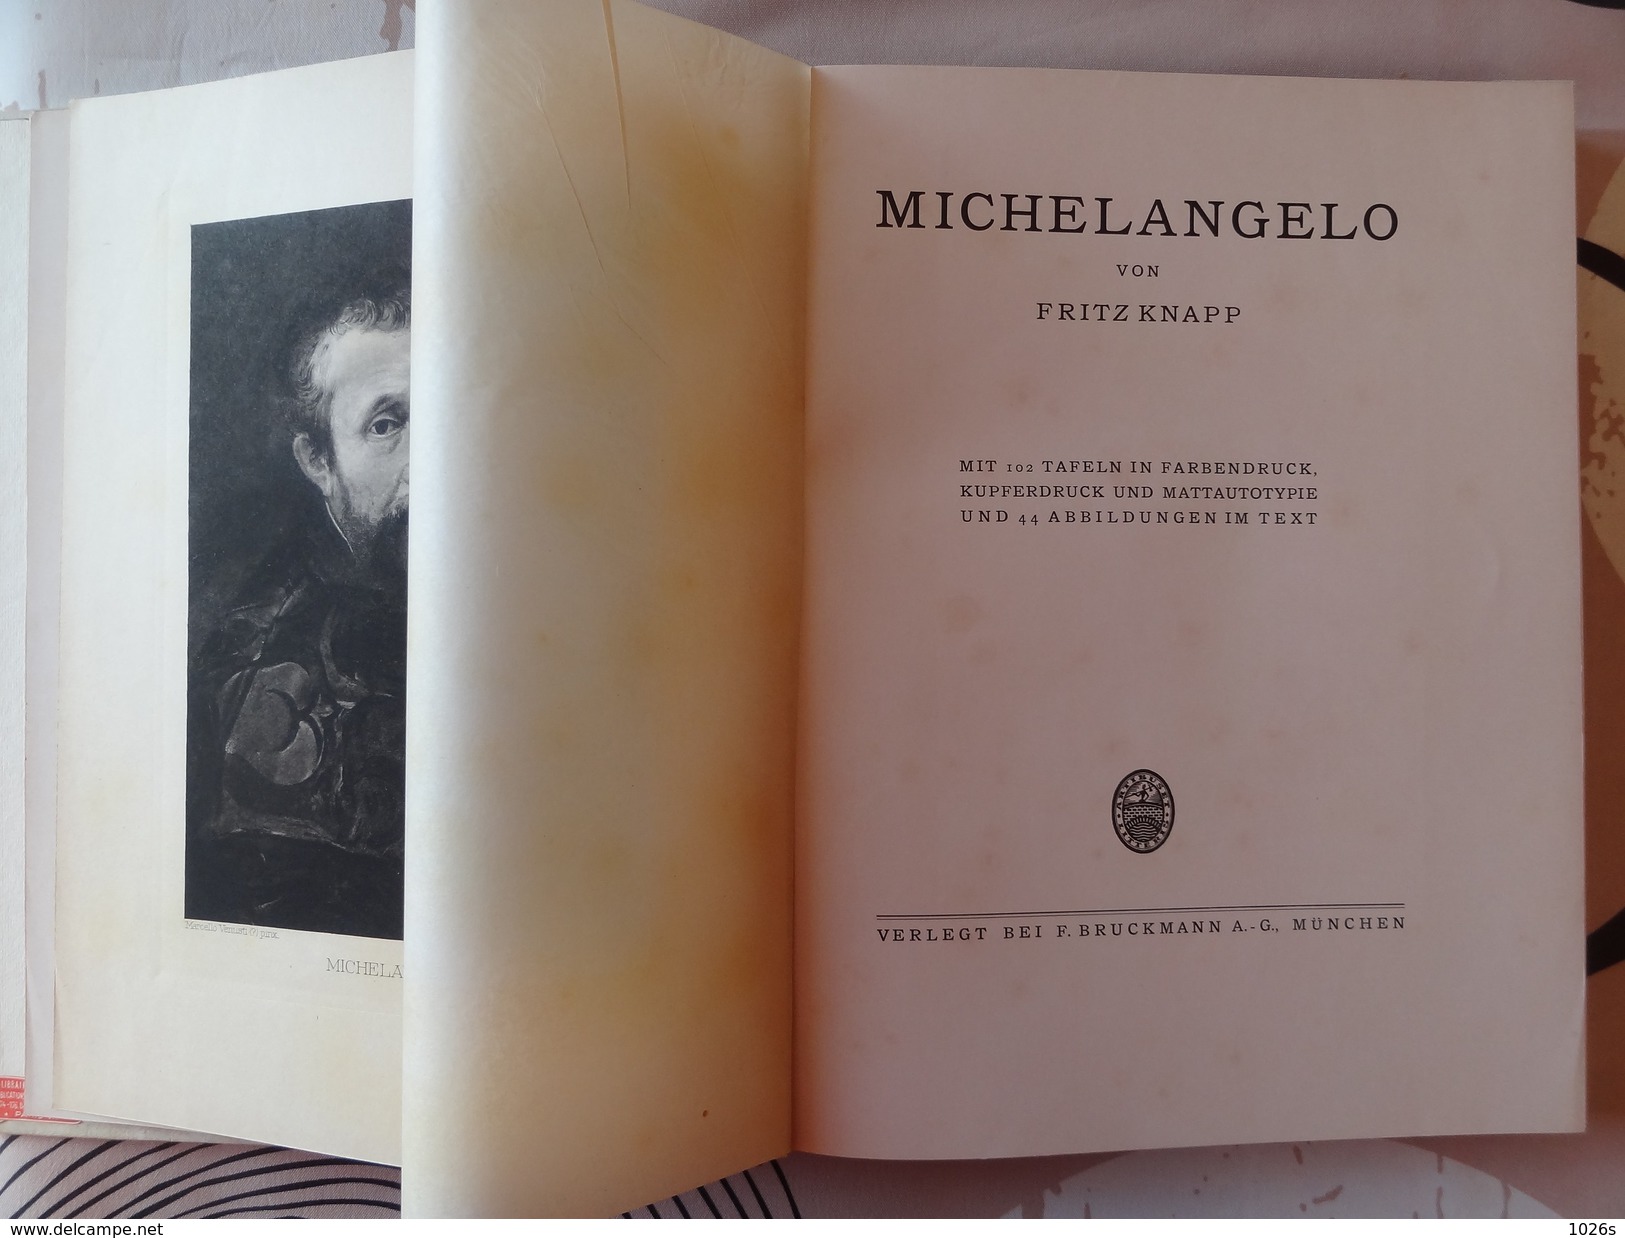 LIVRE D'ART SUR MICHELANGELO DE 1923 PAR FRITZ KNAPP PAR LES EDITIONS F.BRUCKMANN - MUNCHEN - Museos & Exposiciones